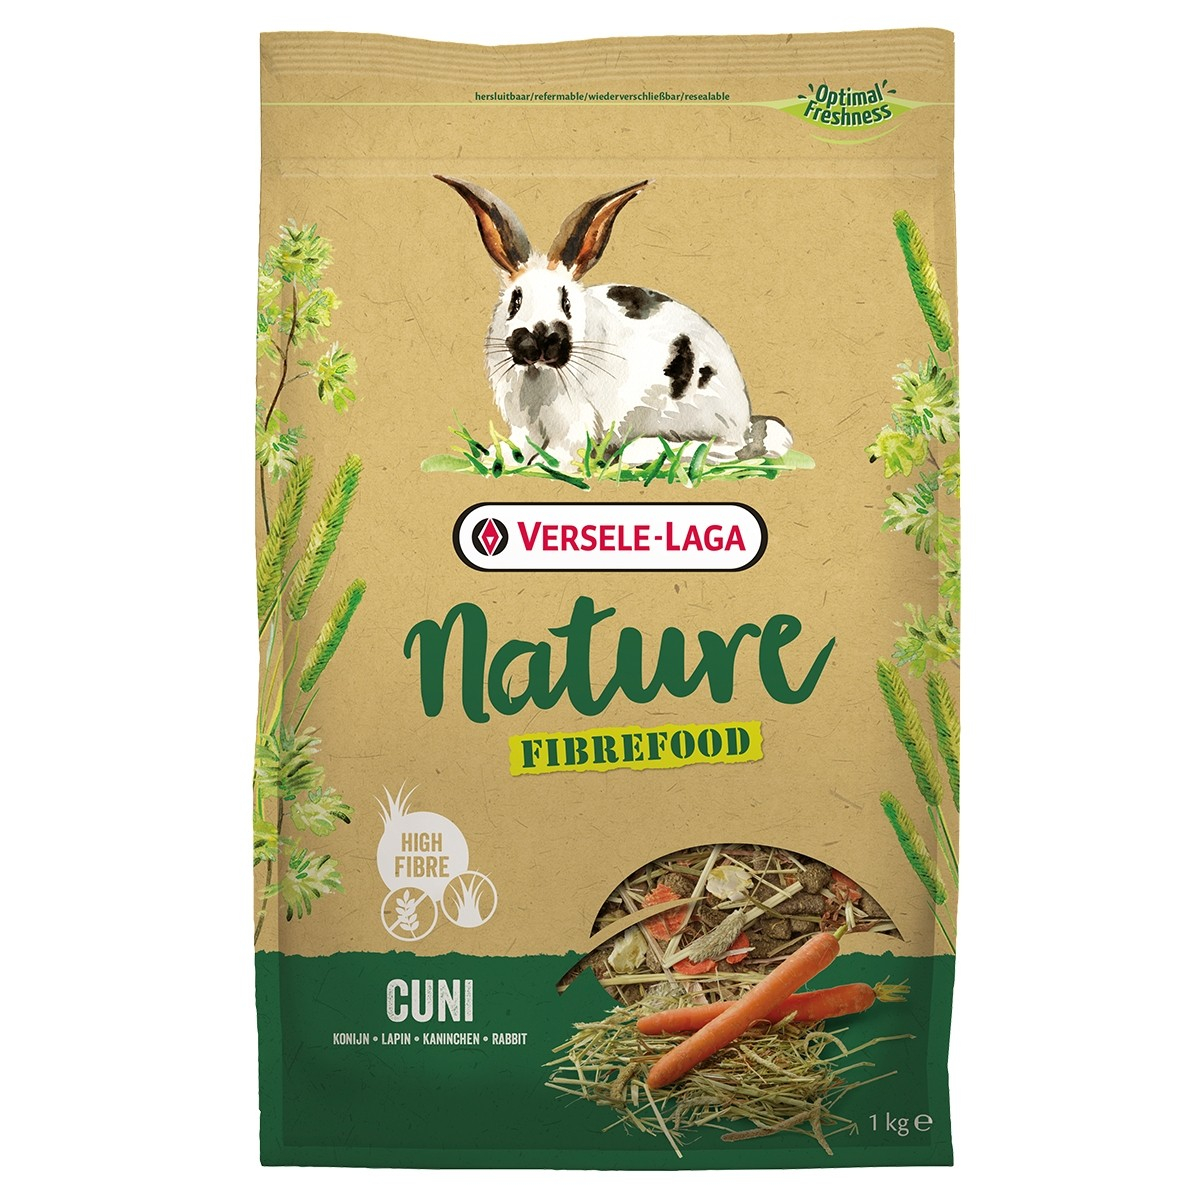 Versele Laga Cuni Nature Fibre food reich an Ballaststoffen für Kaninchen